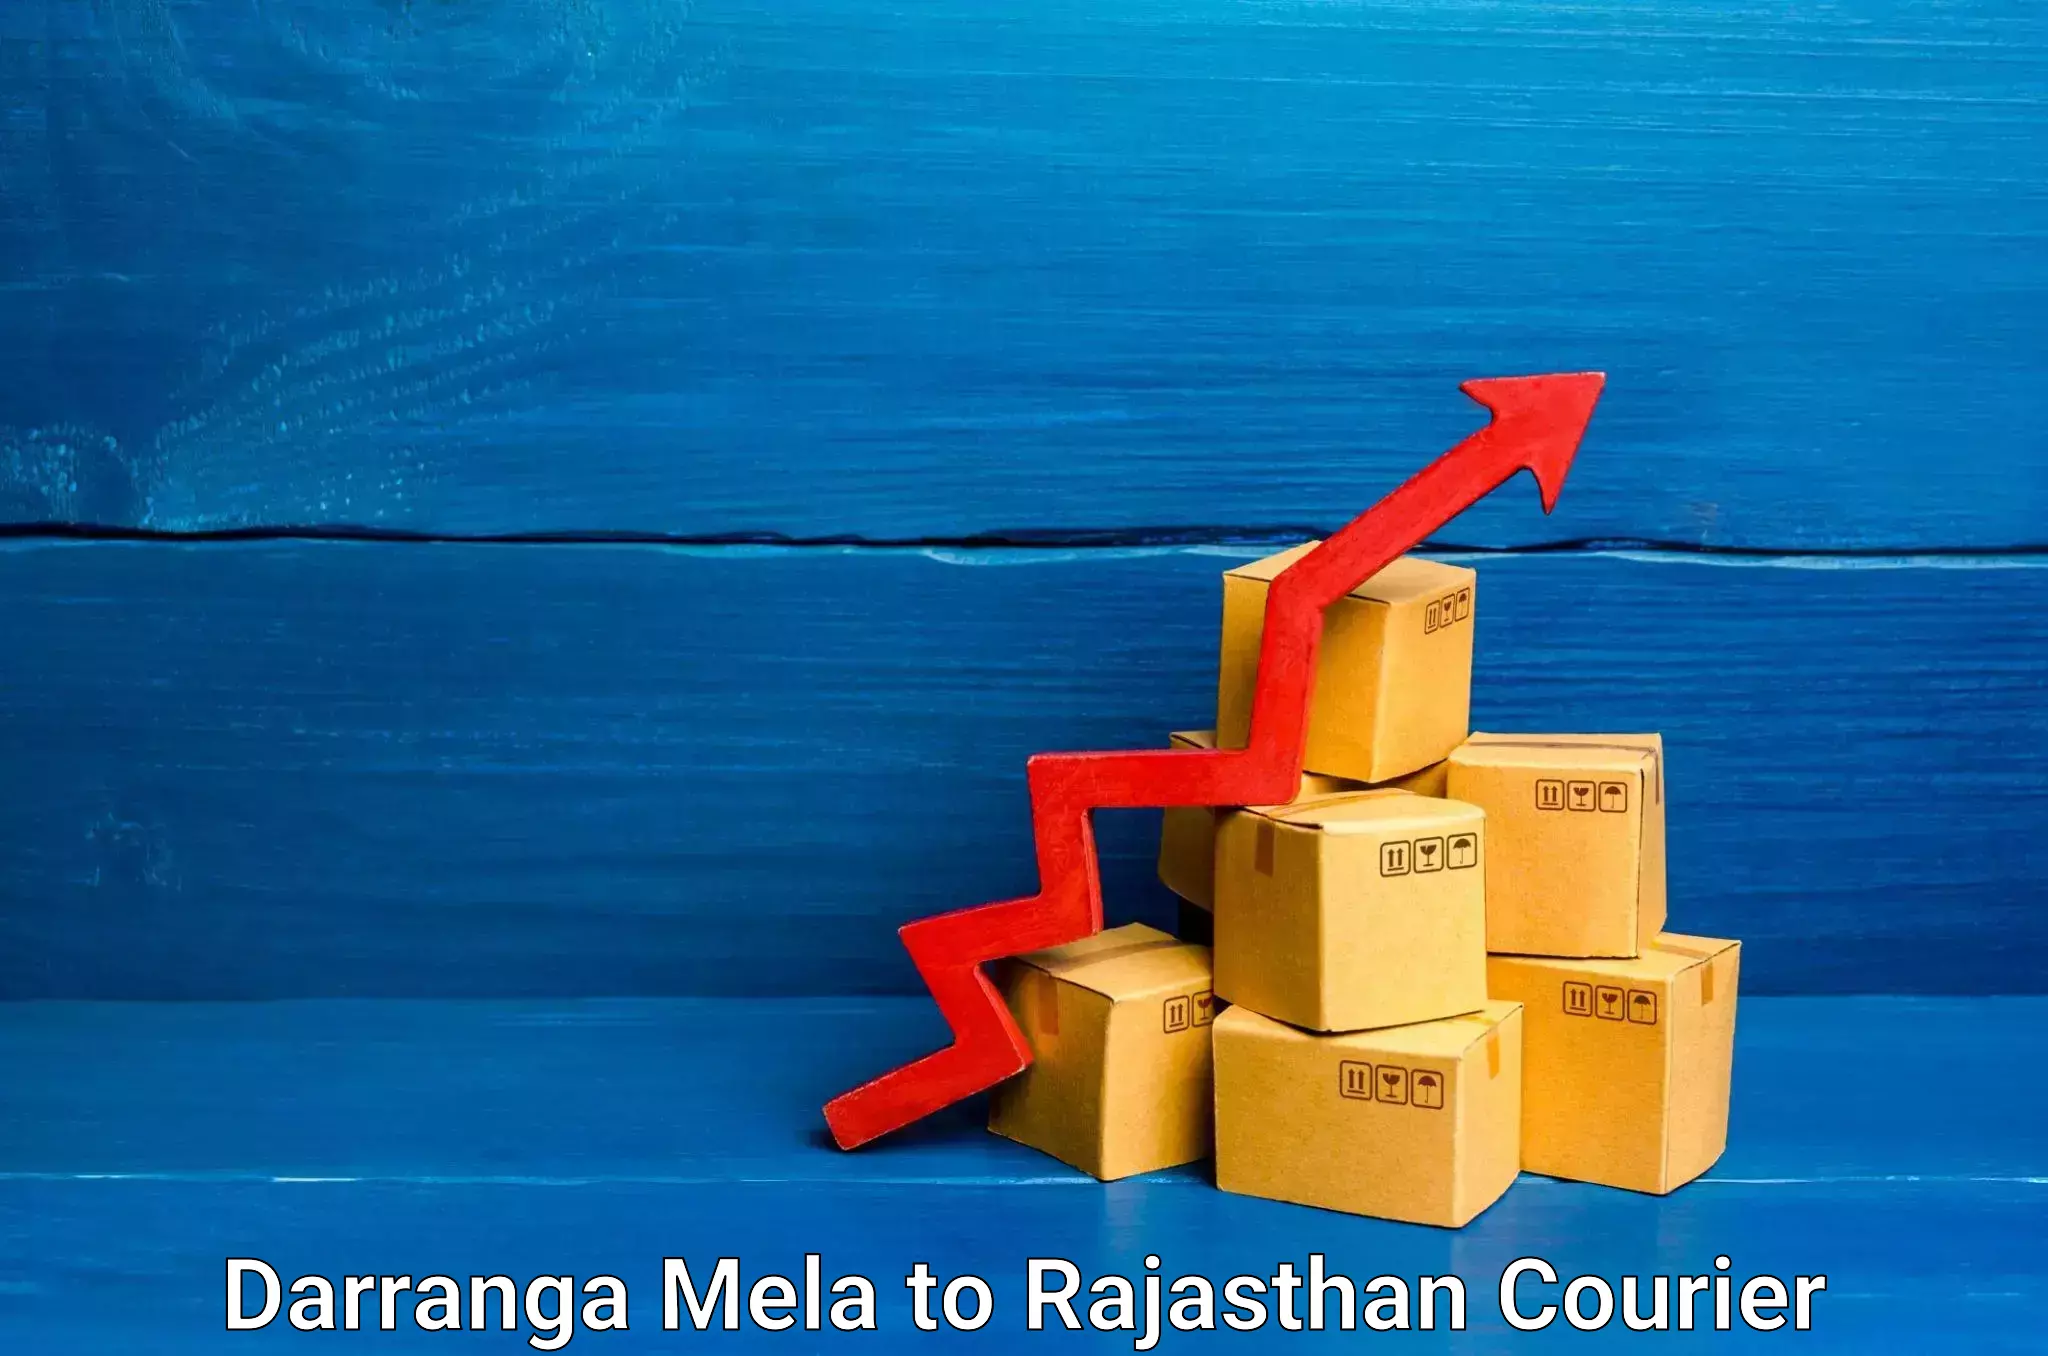 Supply chain efficiency Darranga Mela to Nasirabad